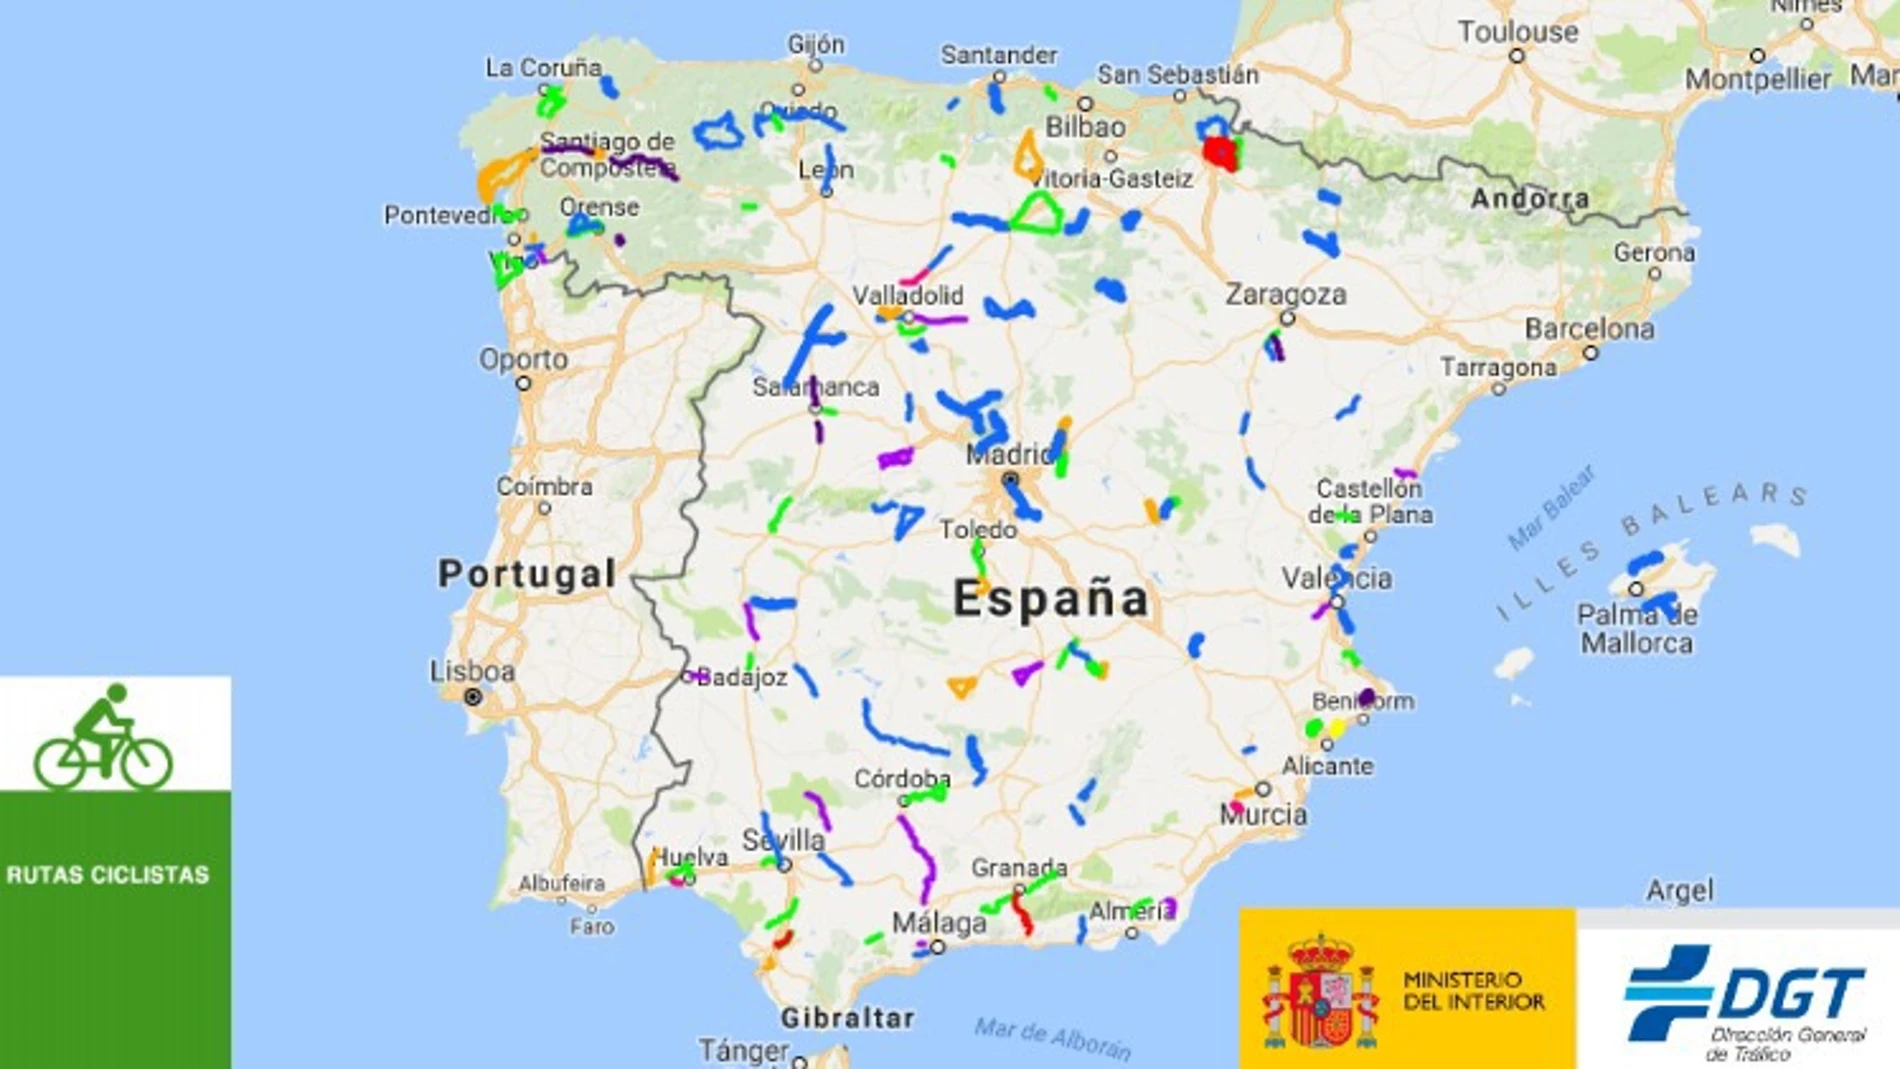 La DGT presenta el mapa de Rutas Ciclistas Protegidas